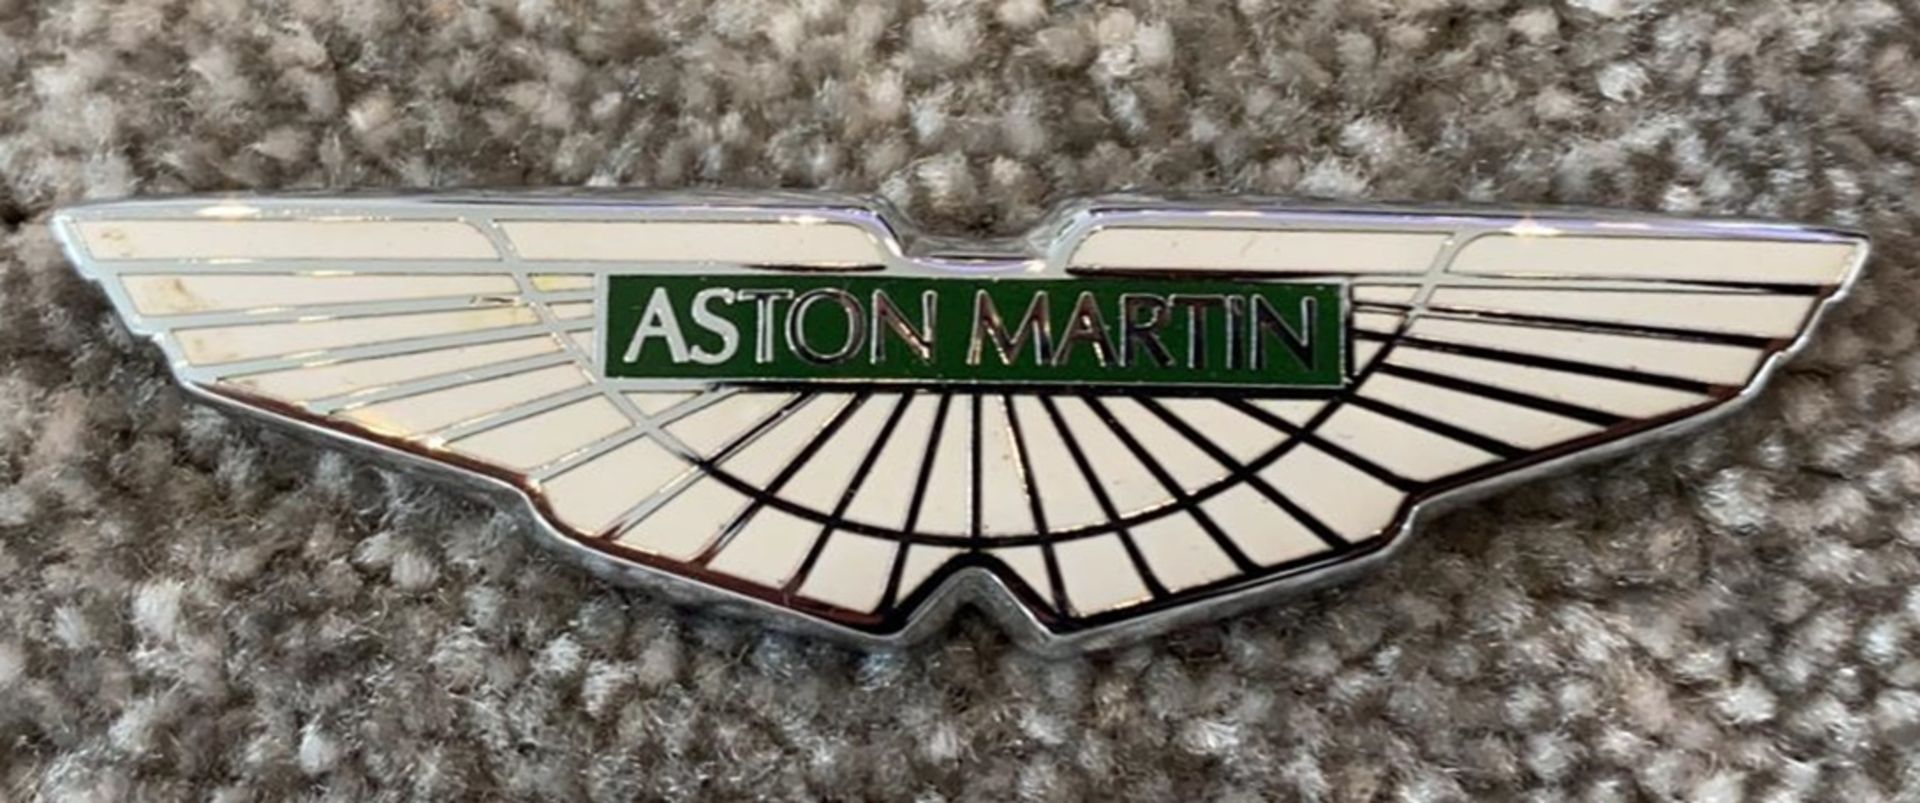 1 x Genuine Aston Martin Pin Badge - CL590 - Location: Altrincham WA14